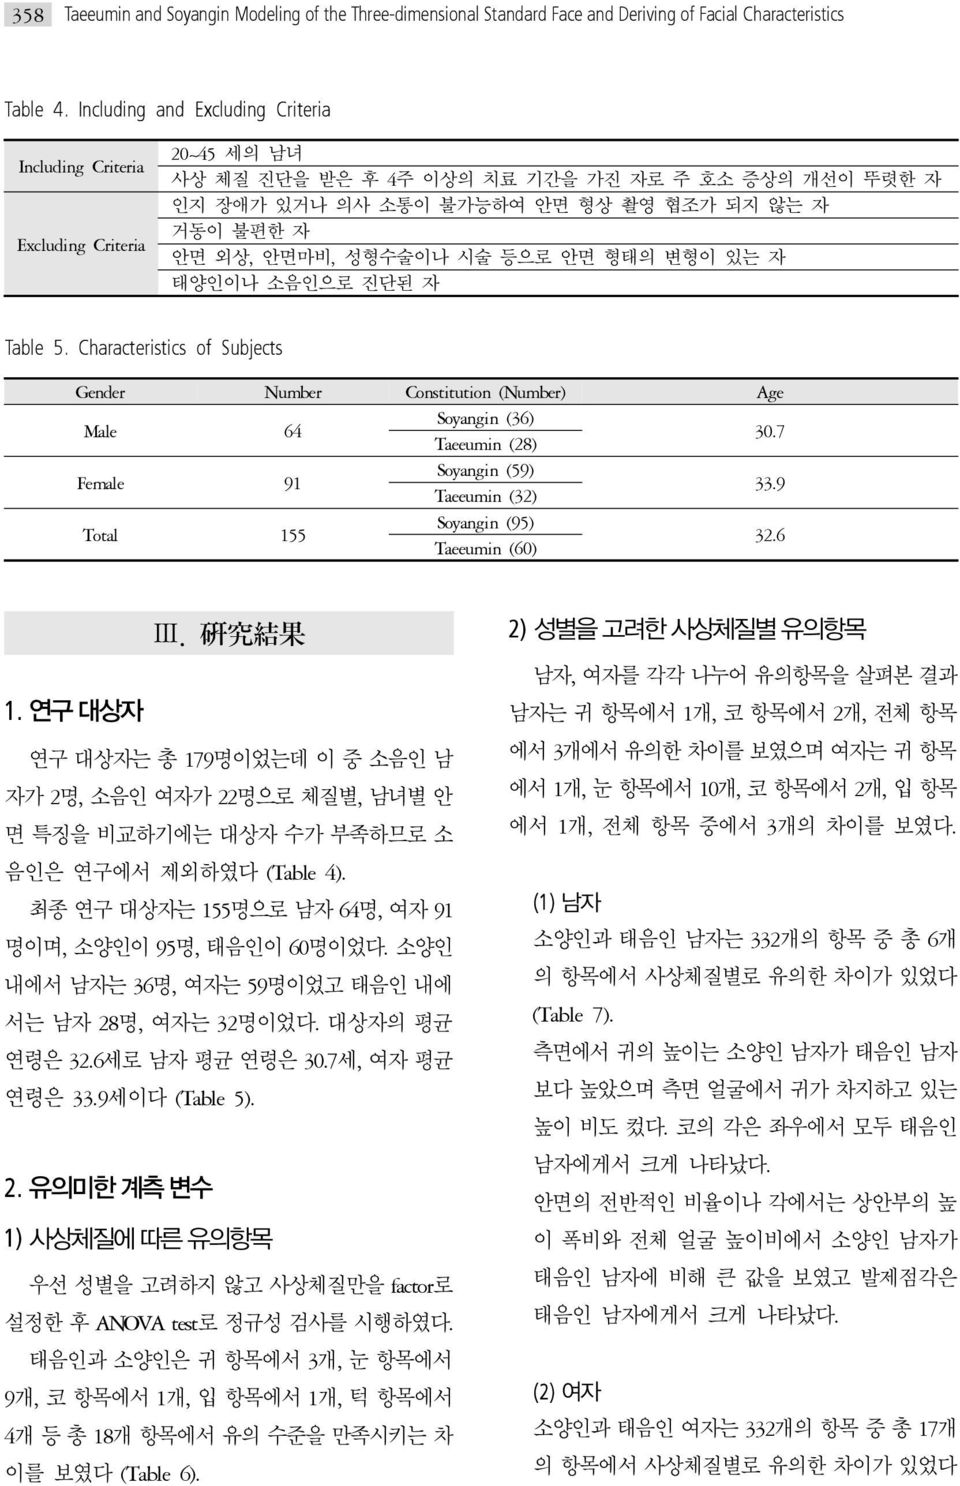 안면마비, 성형수술이나 시술 등으로 안면 형태의 변형이 있는 자 태양인이나 소음인으로 진단된 자 Table 5. Characteristics of Subjects Gender Number Constitution (Number) Age Male 64 Soyangin (36) Taeeumin (28) 30.